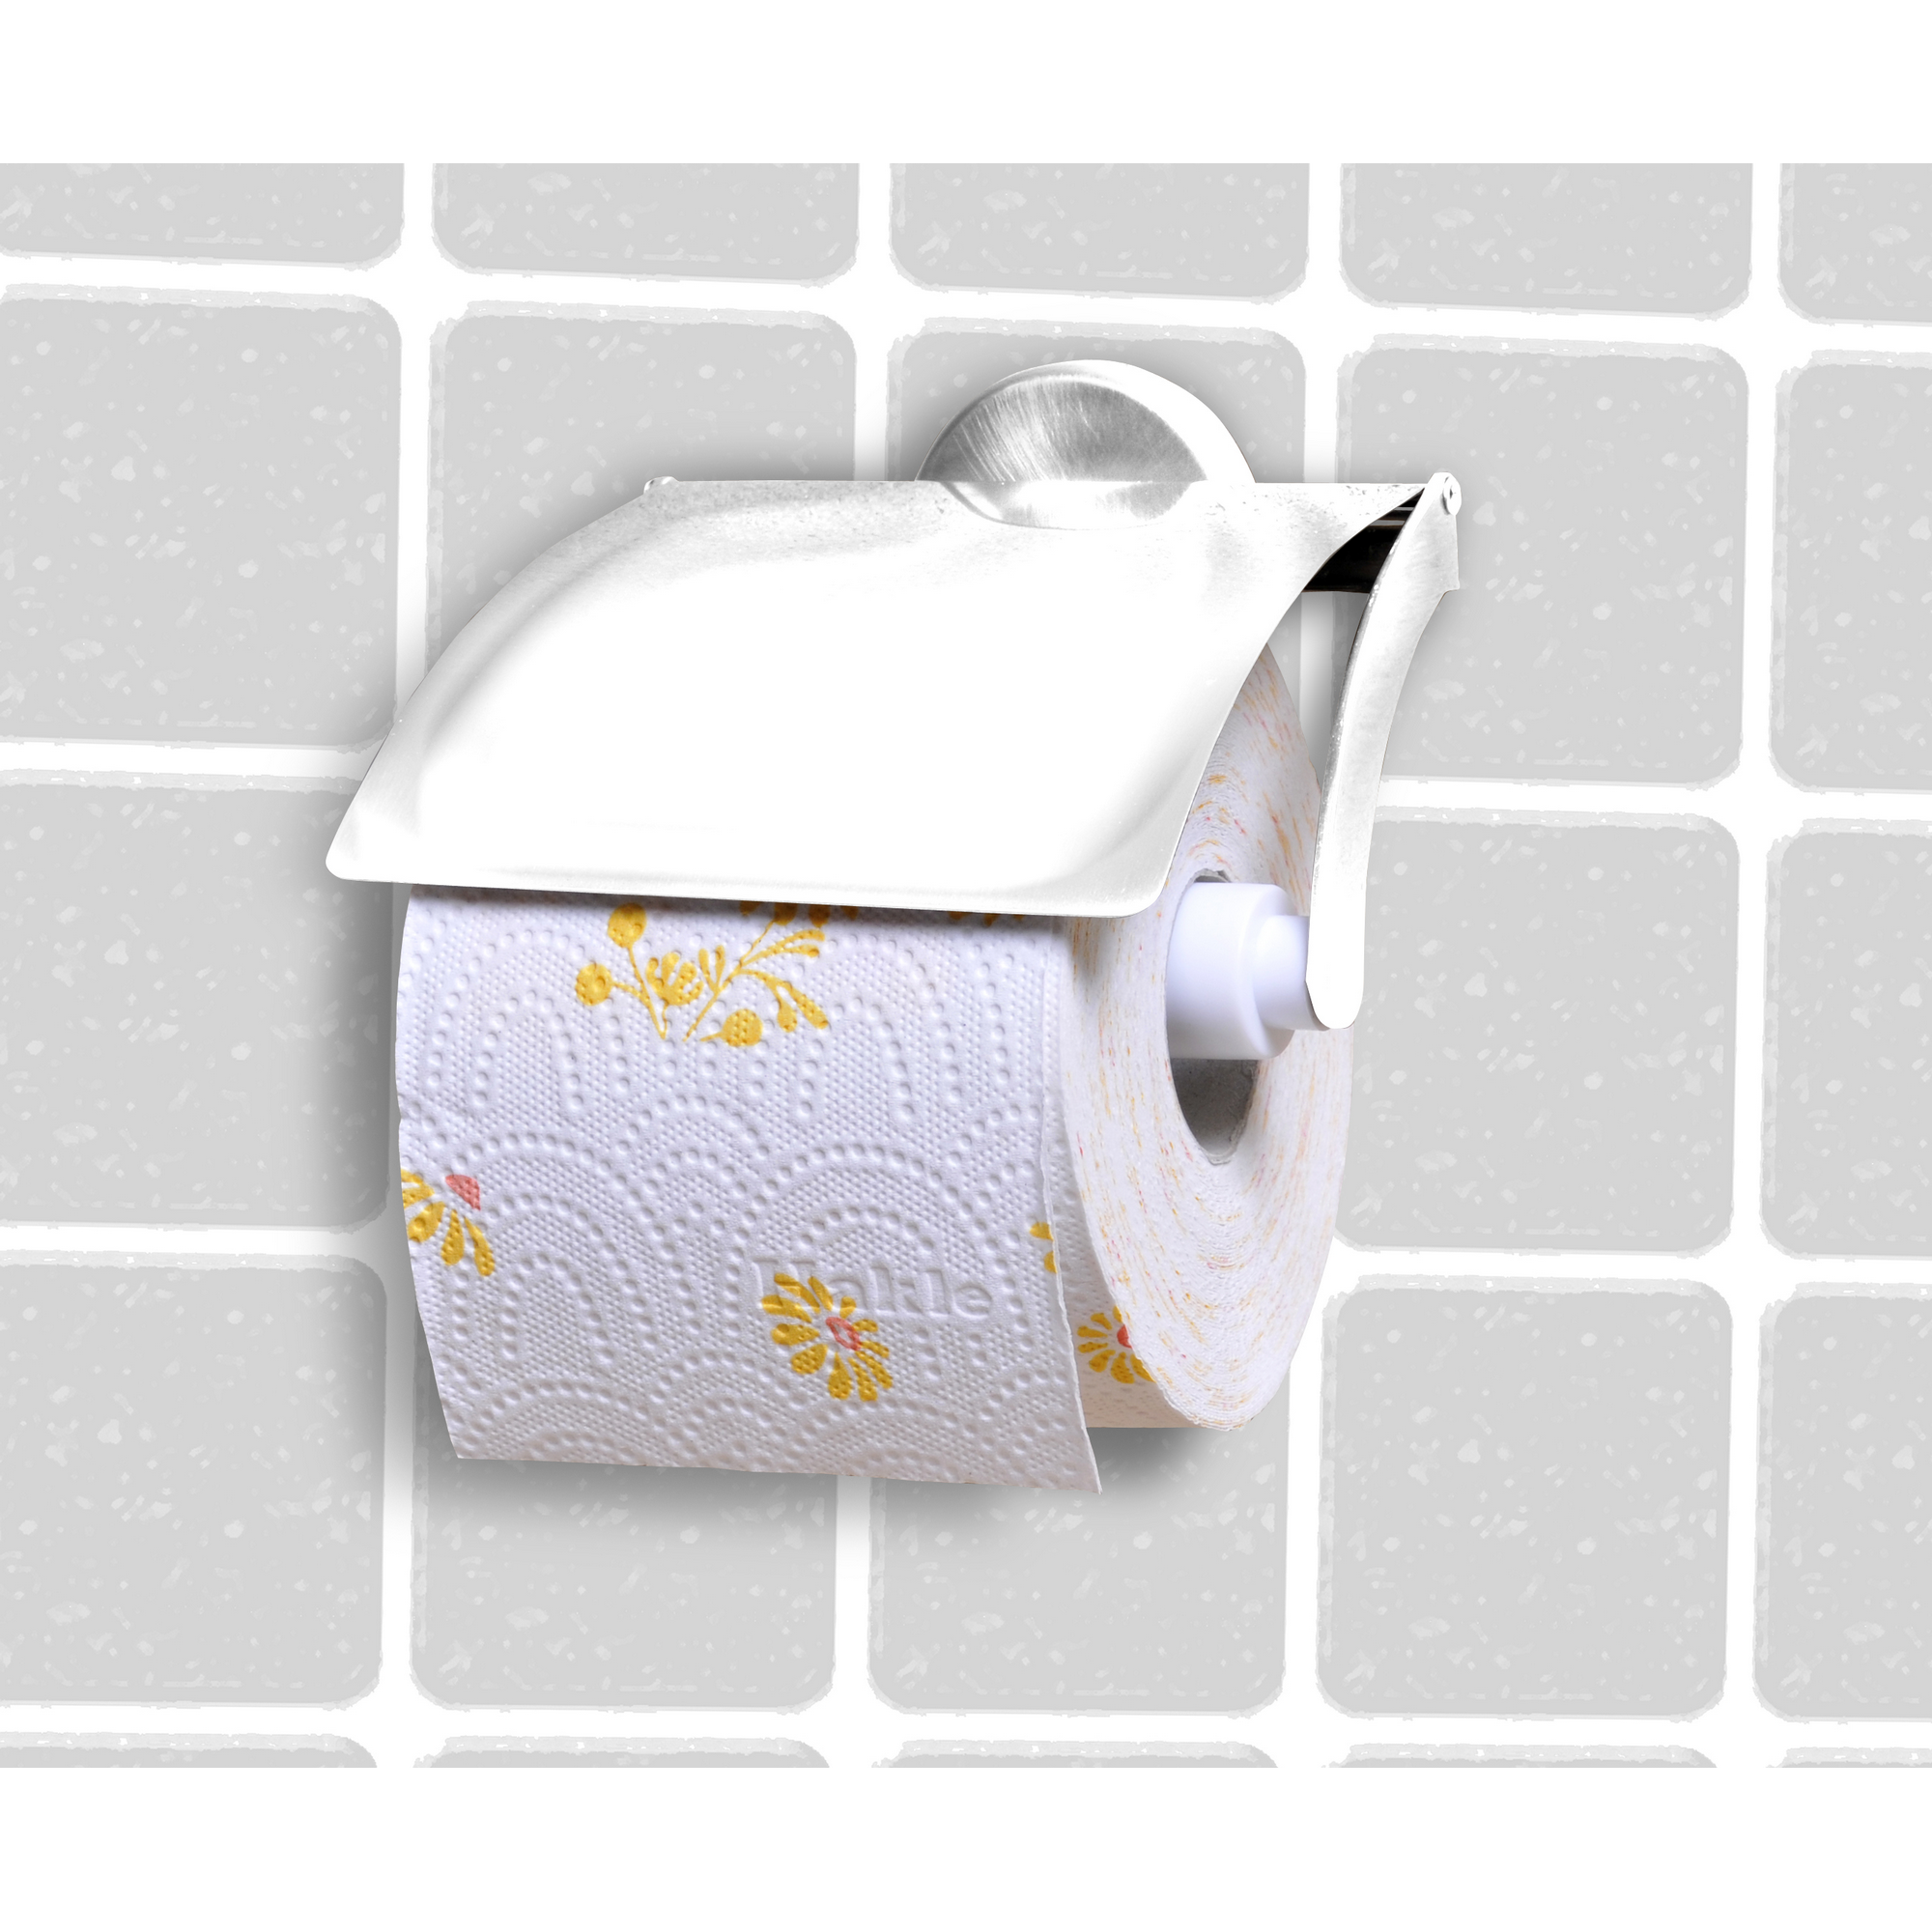 Toilettenpapierhalter mit Deckel 'Vision' wandhängend verchromt + product picture